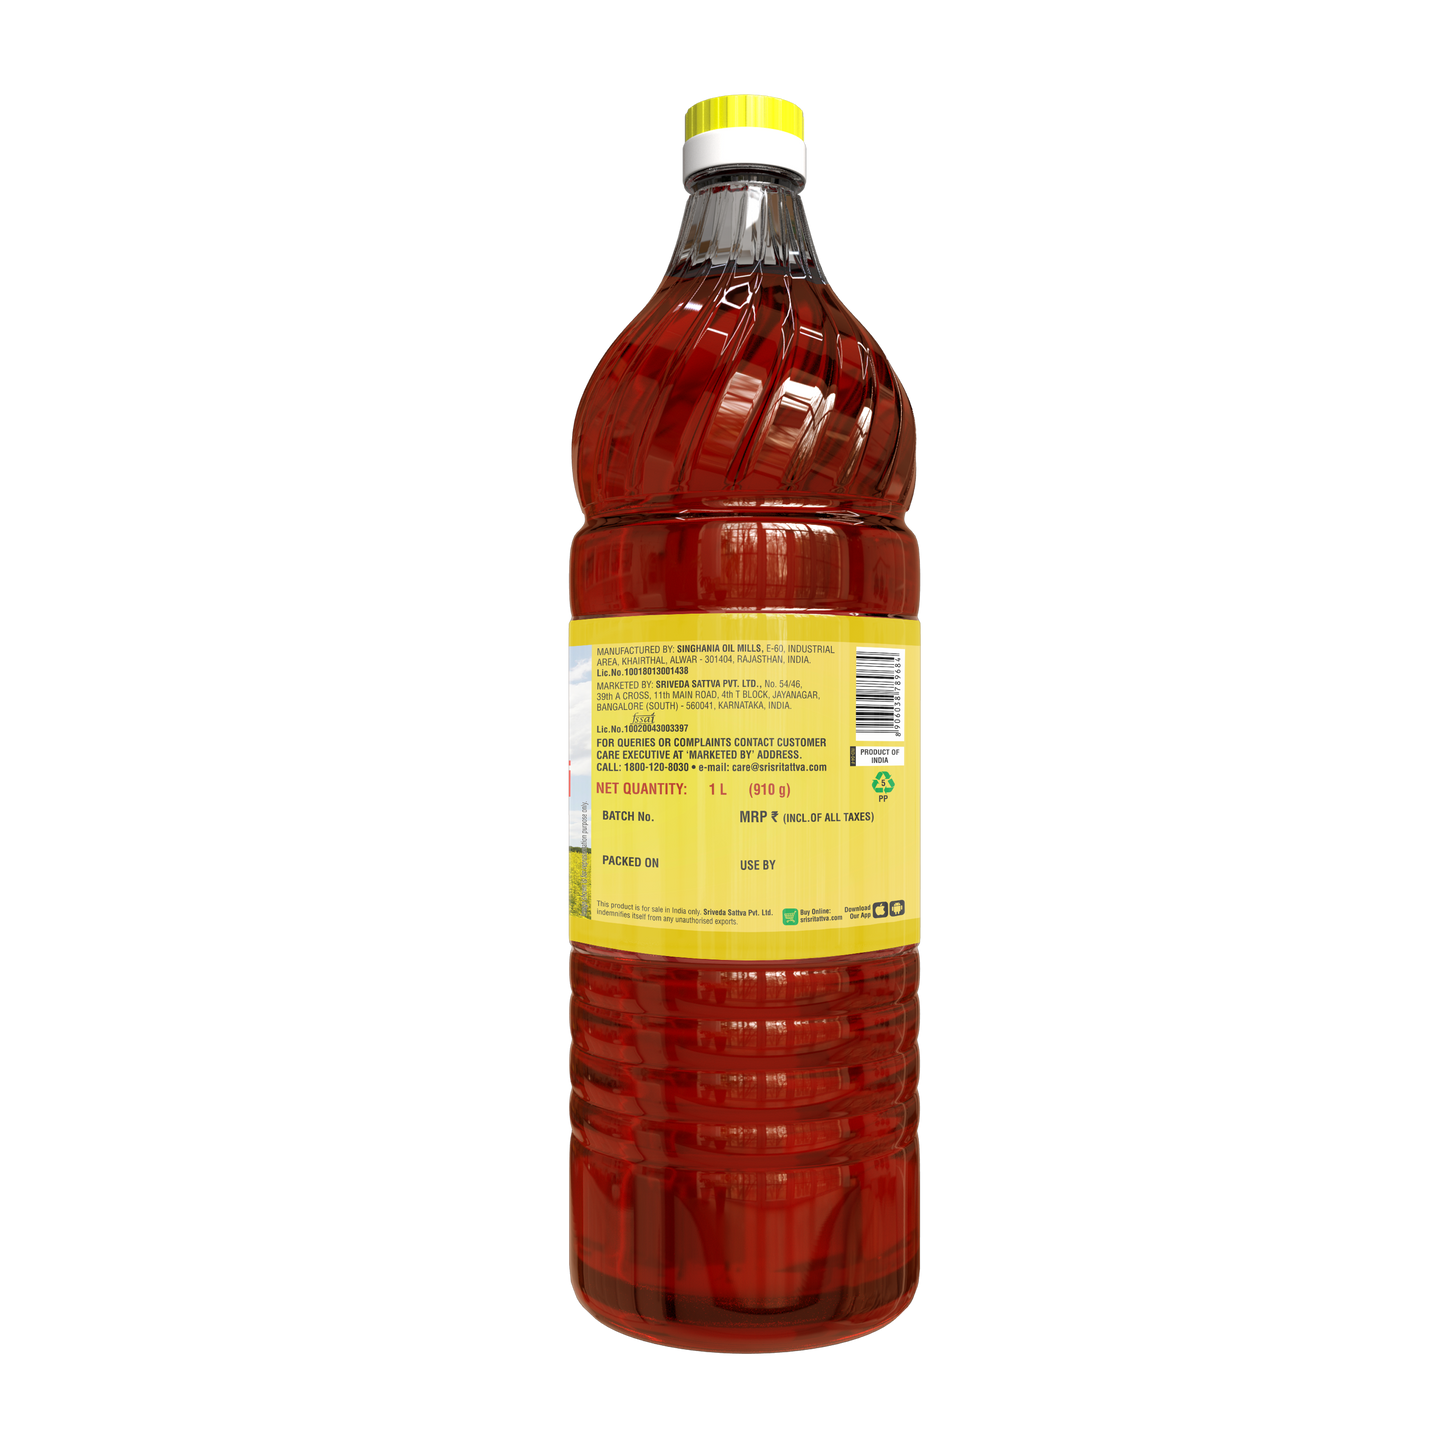 Premium Kachi Ghani Mustard Oil Bottle, 1 L